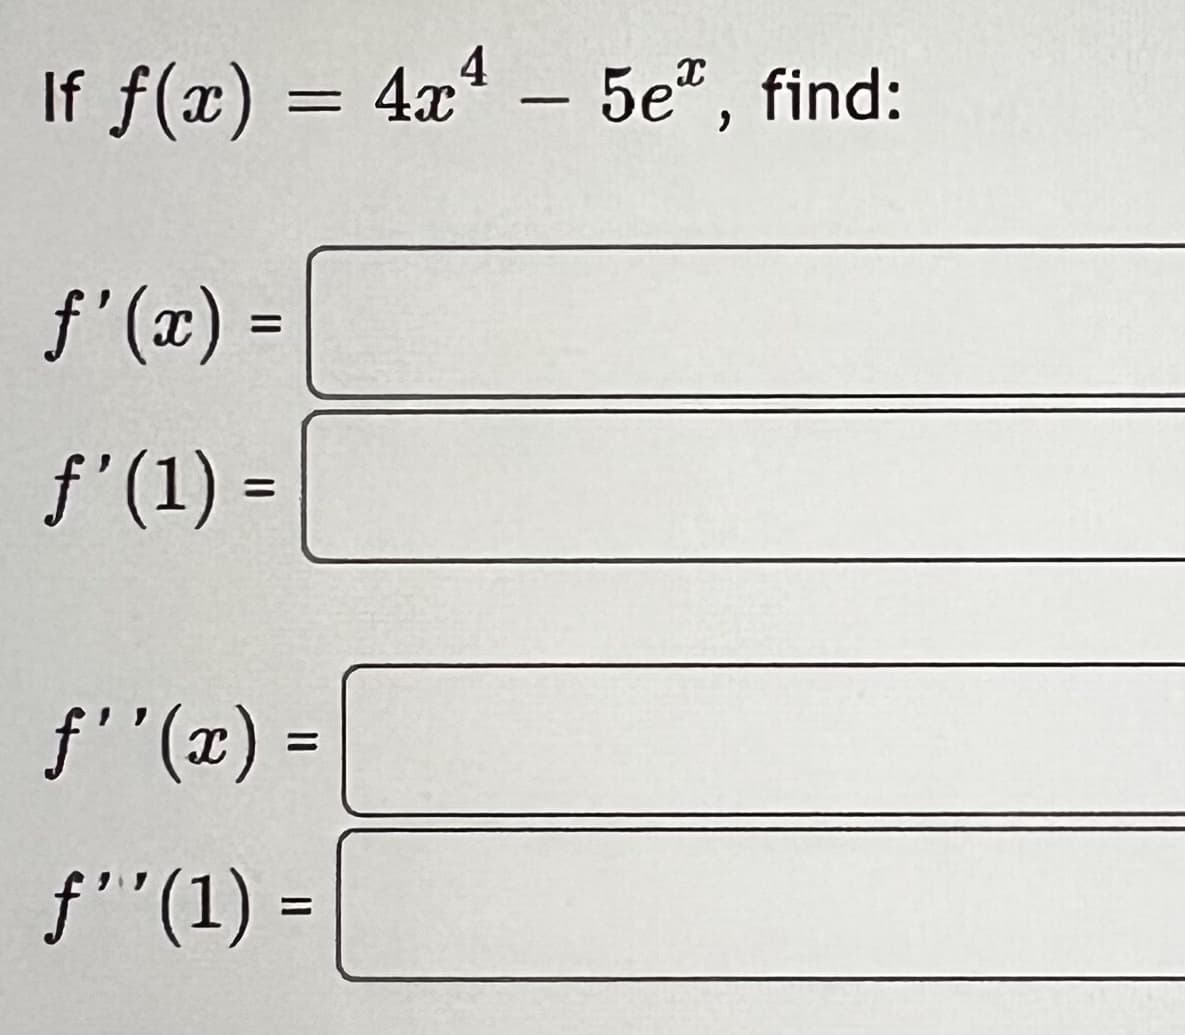 If f(x) = 4x4 - 5e, find:
ƒ'(x) =
ƒ' (1) =
ƒ''(x) =
f''(1) =